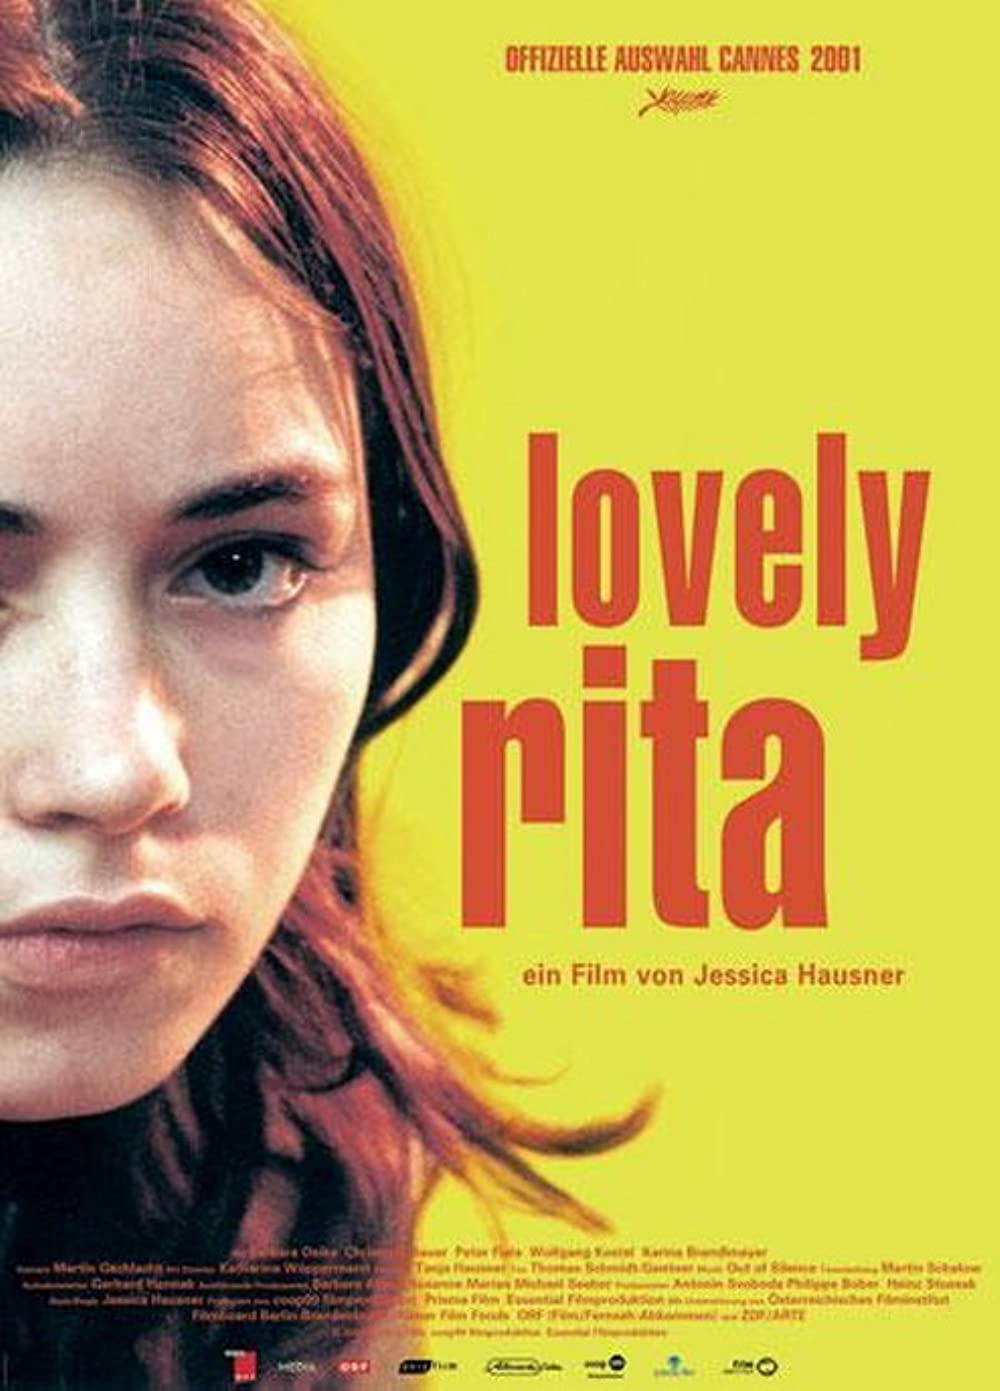 Filmbeschreibung zu Lovely Rita